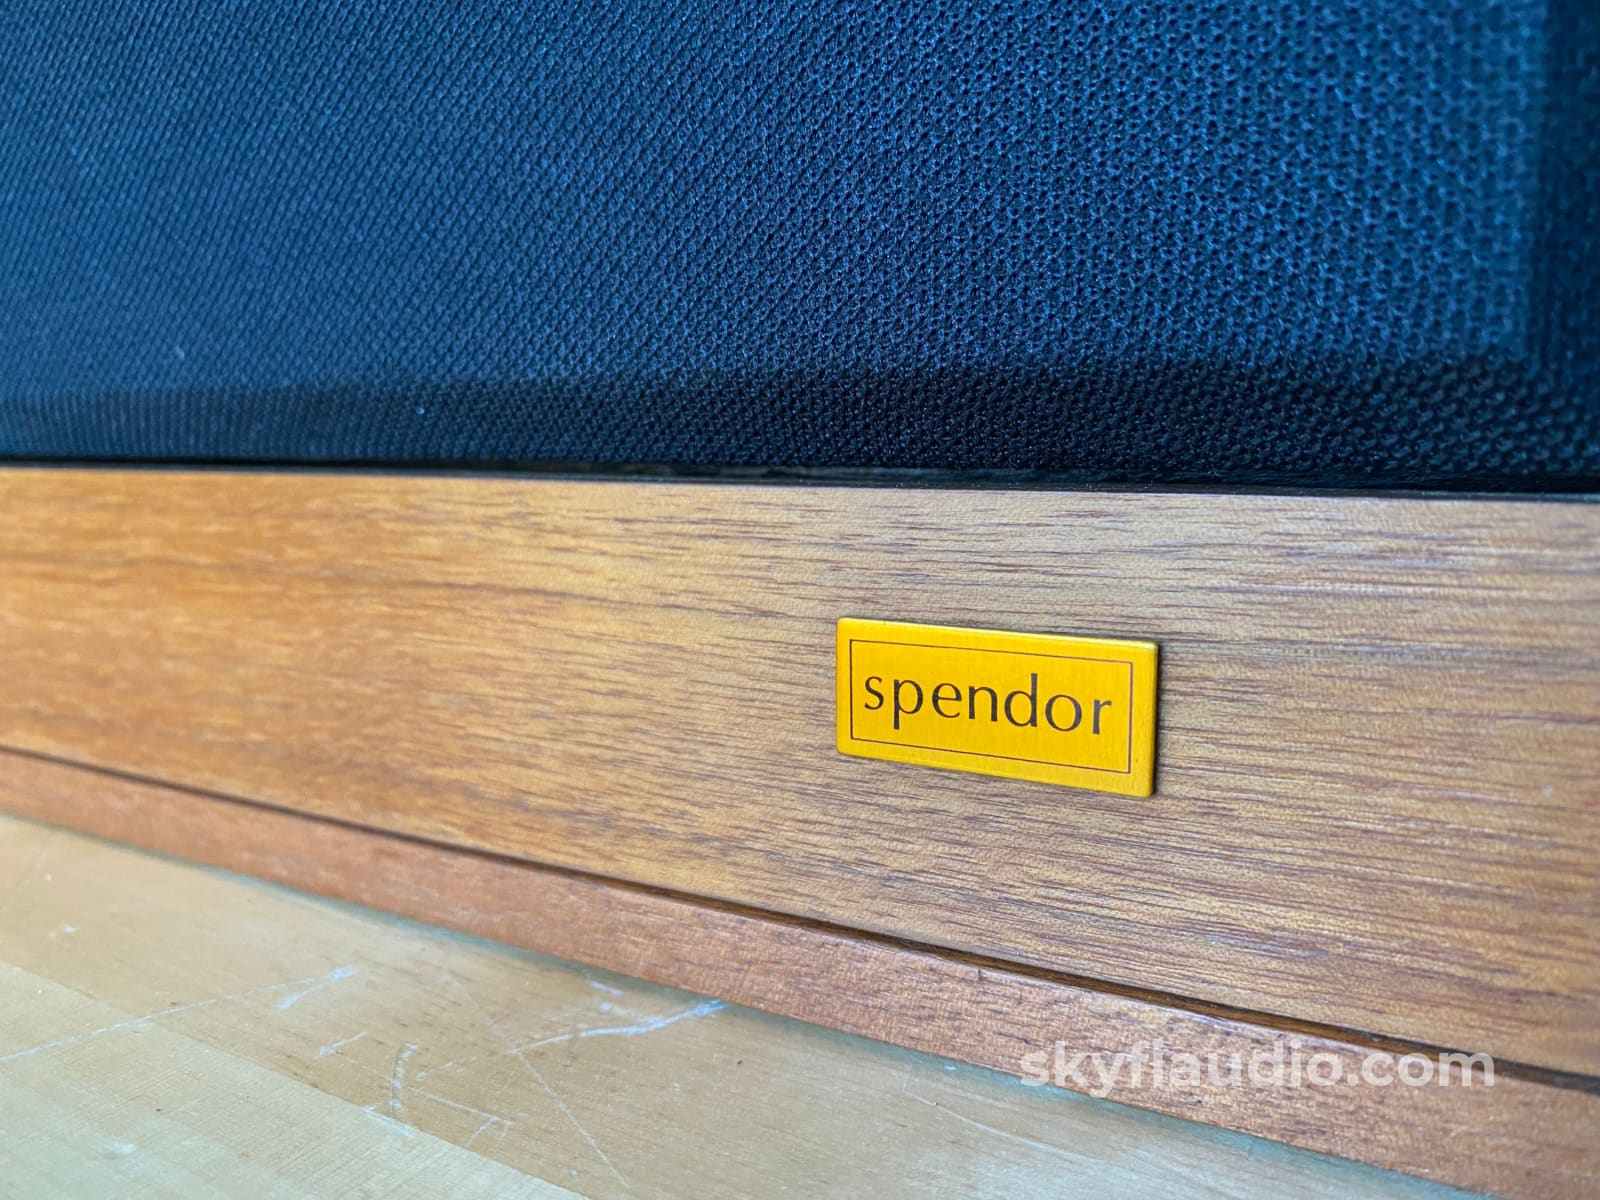 Spendor Sp1 Vintage British Speakers - A True Classic